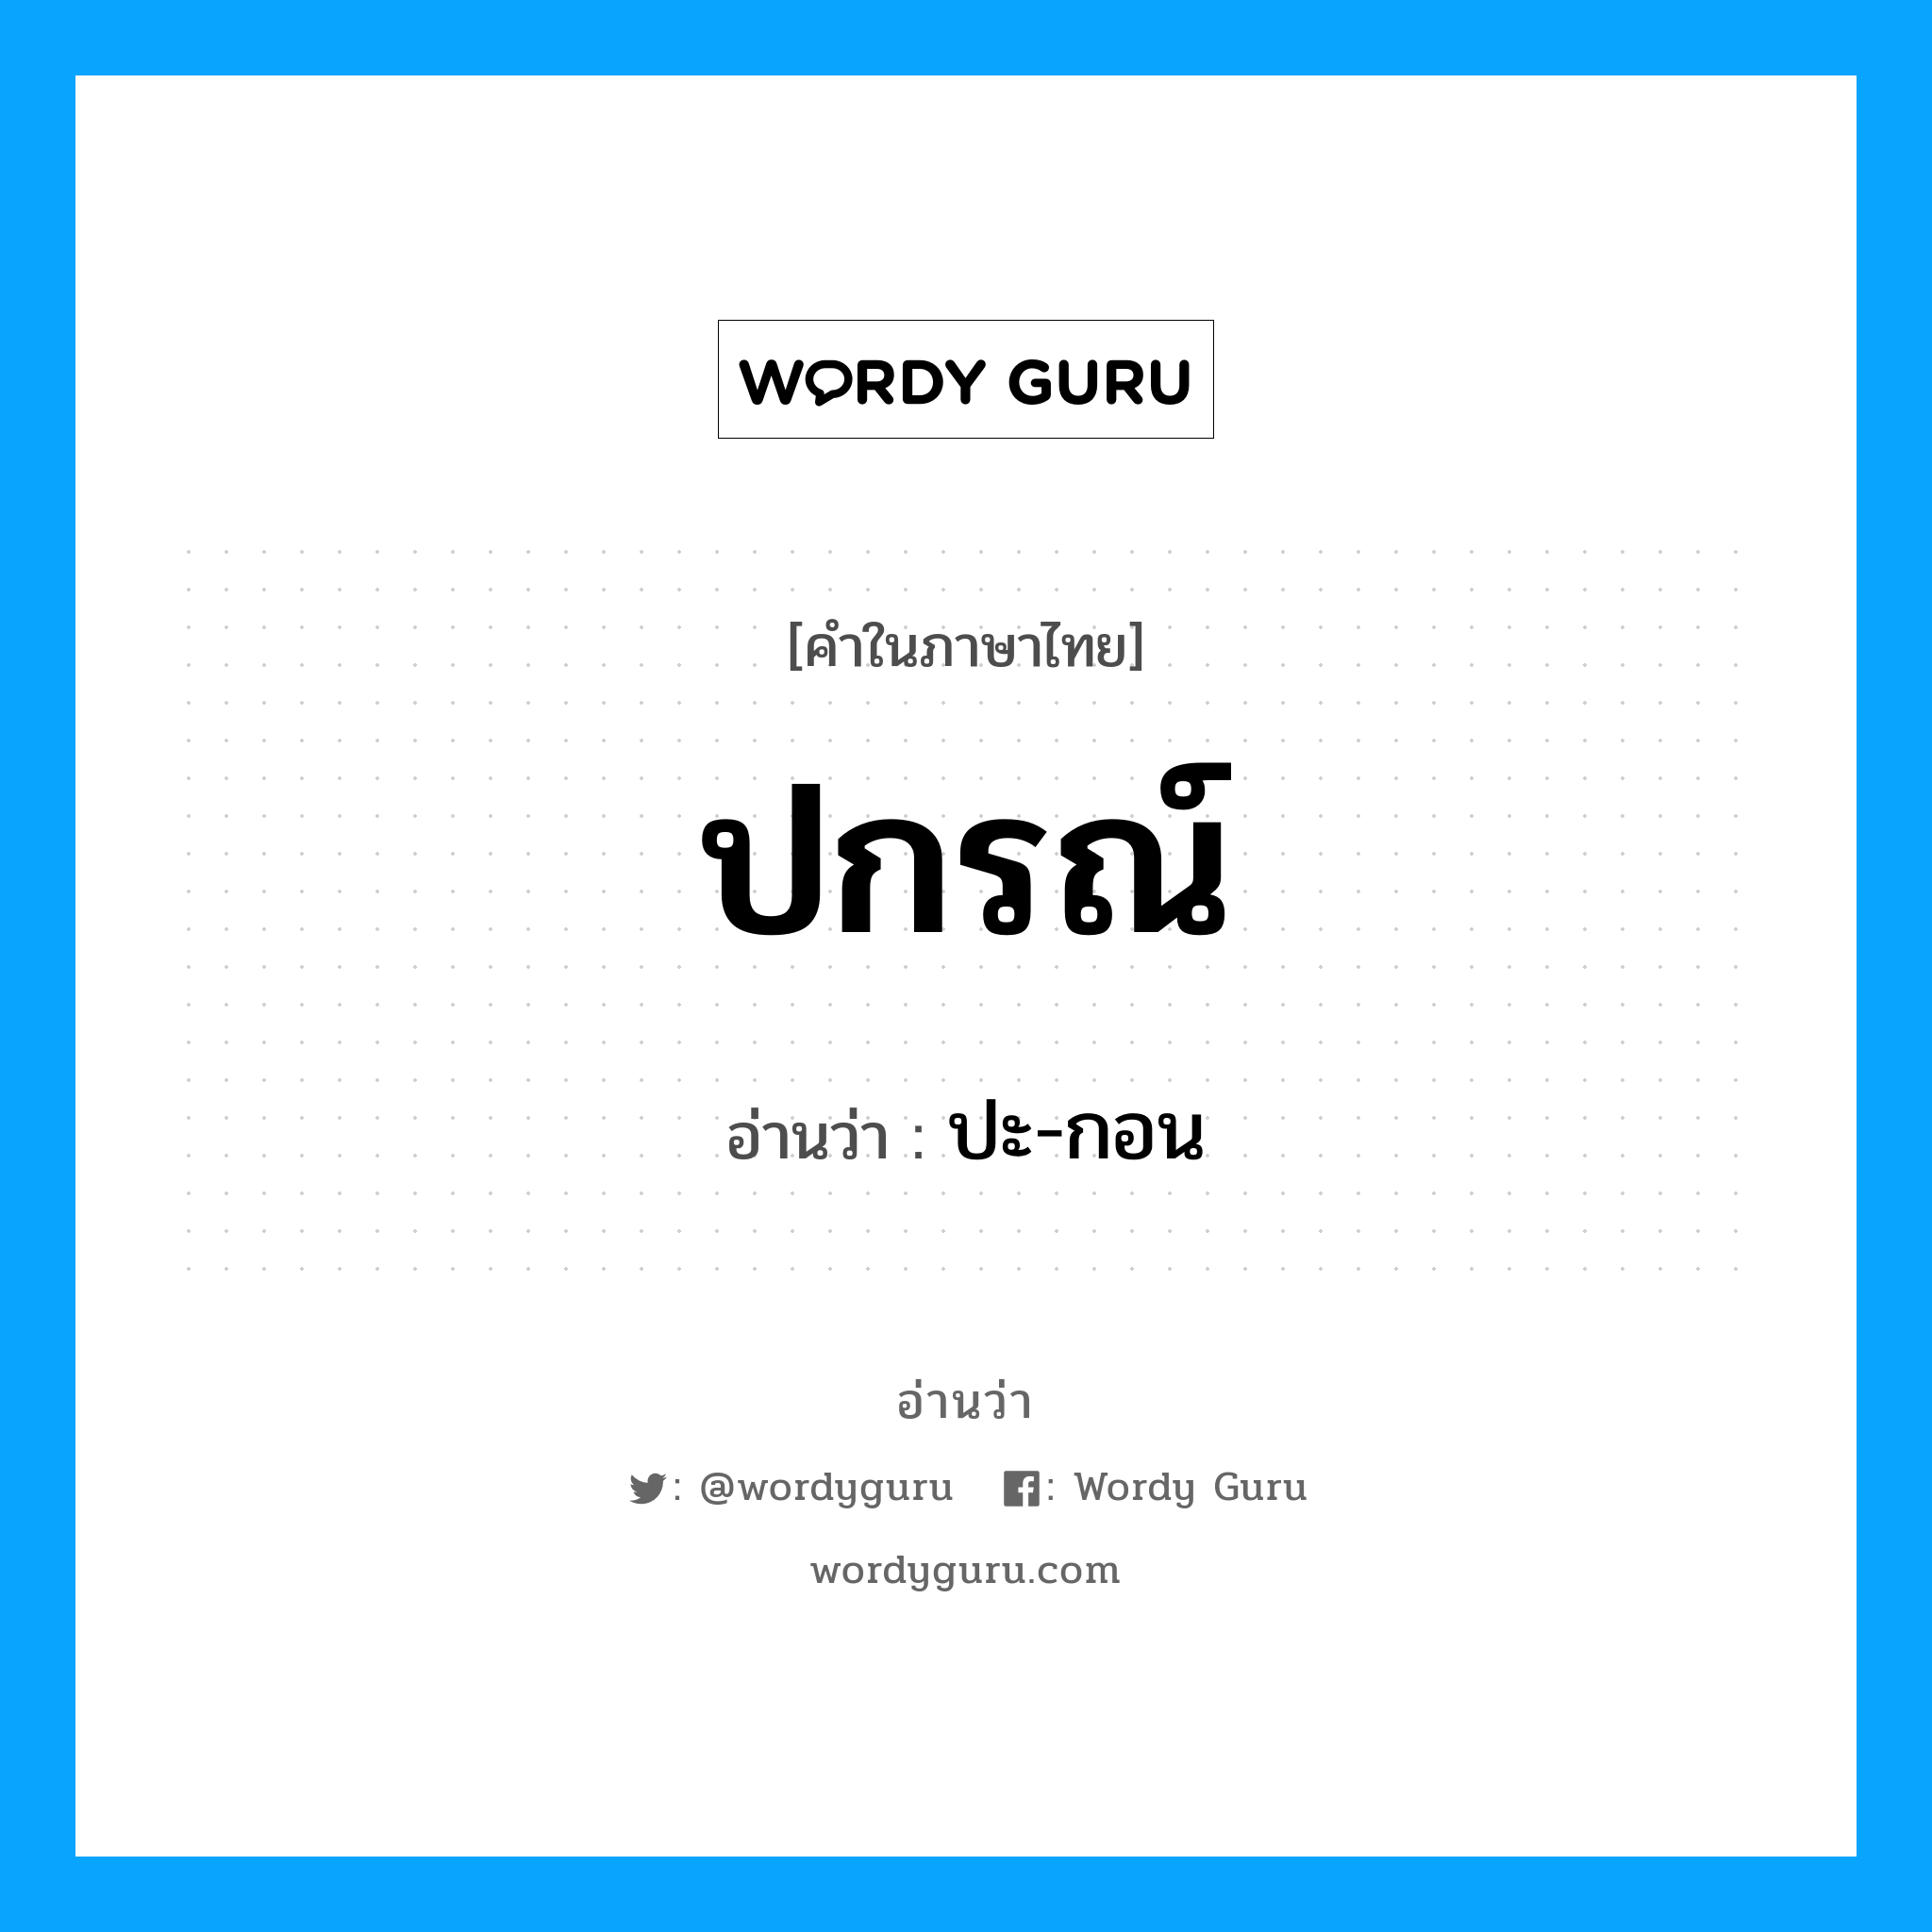 ปะ-กอน เป็นคำอ่านของคำไหน?, คำในภาษาไทย ปะ-กอน อ่านว่า ปกรณ์